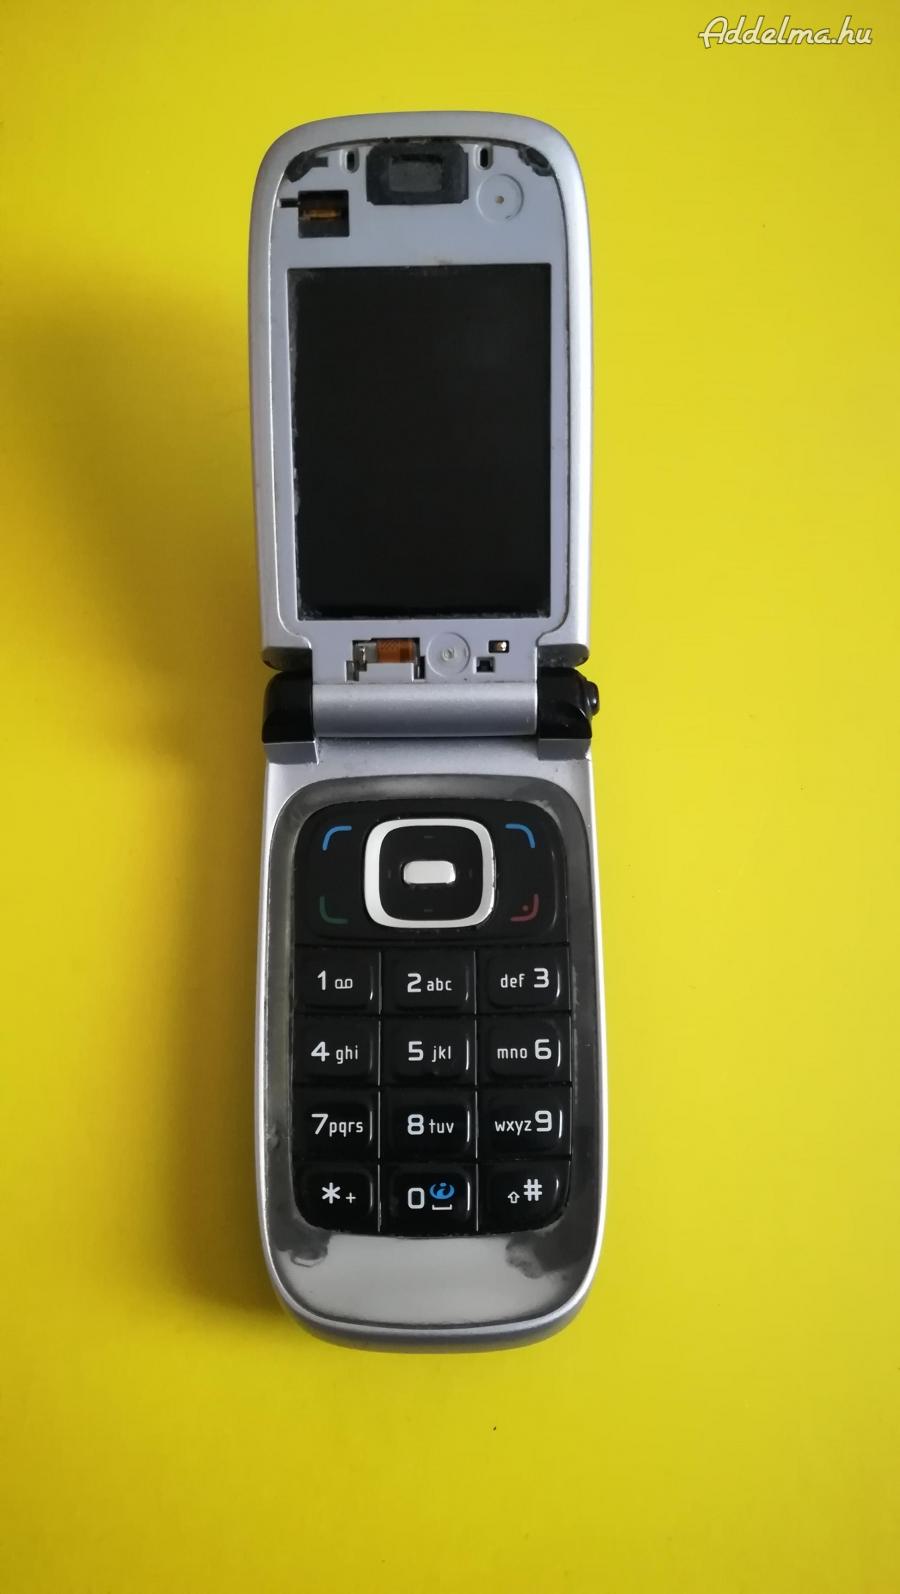 Nokia 6131 mobil eladó ,nem ad képet ad!!!